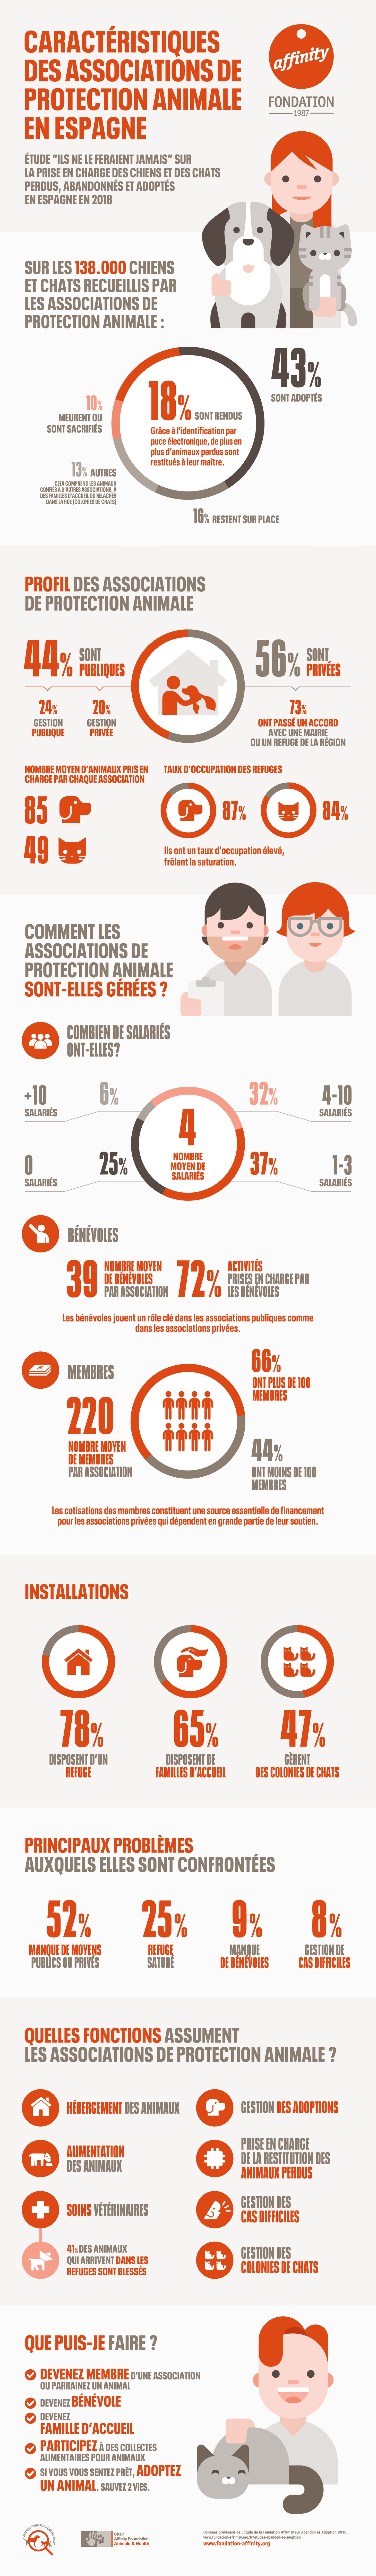 Infographie Caractéristiques des associations de protection animale en Espagne